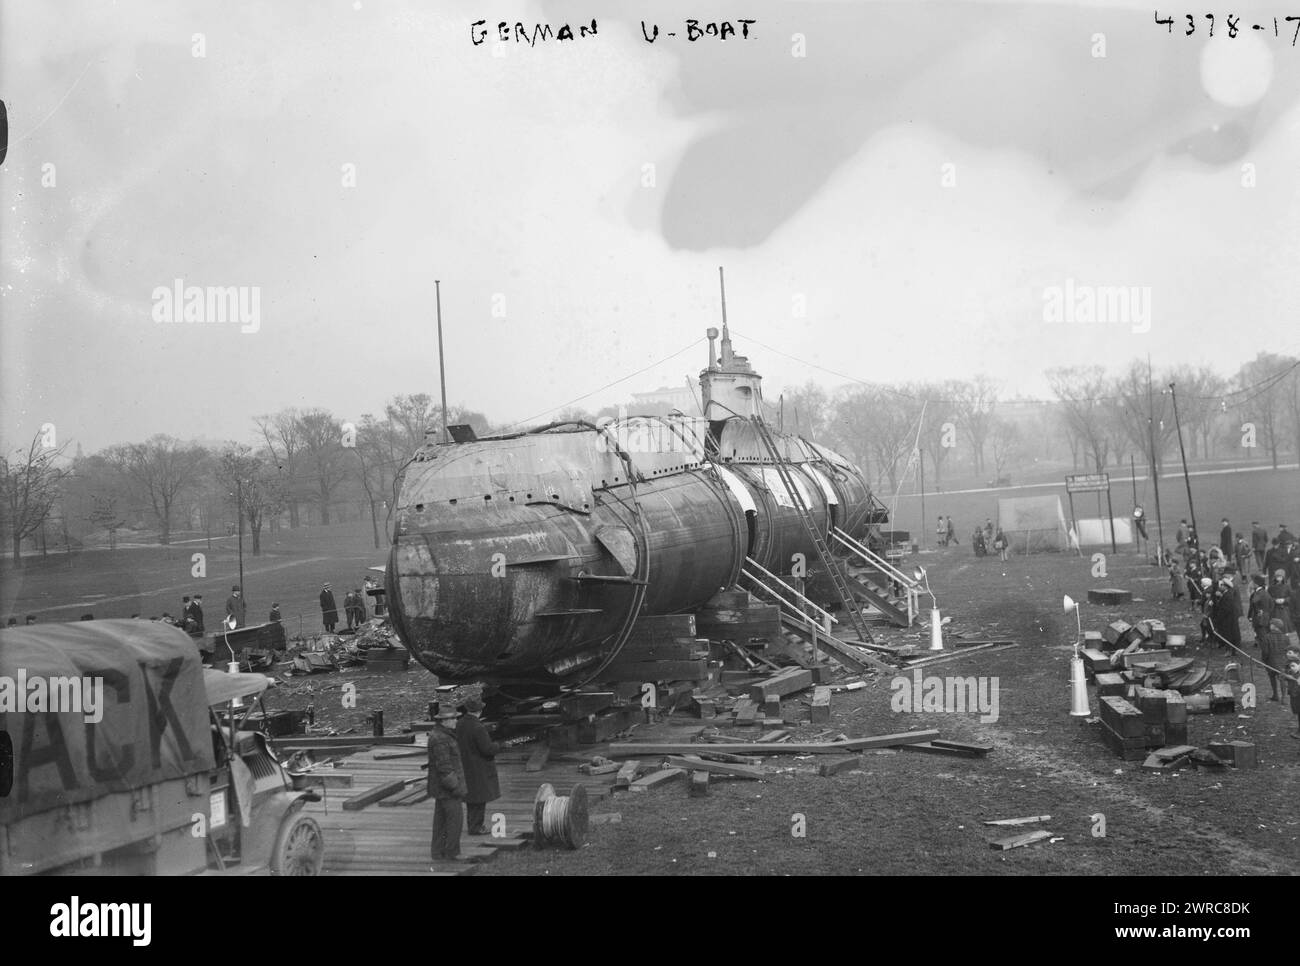 U-Boot allemand, la photographie montre le SM UC-5, un sous-marin de type U-Boot allemand de type UC I capturé par les Alliés, apporté à New York et renommé U-Buy-a-Bond. Le sous-marin, montré à Central Park, a participé à la Liberty Loan Parade à New York le 25 octobre 1917, 1917, Guerre mondiale, 1914-1918, négatifs en verre, 1 négatif : verre Banque D'Images